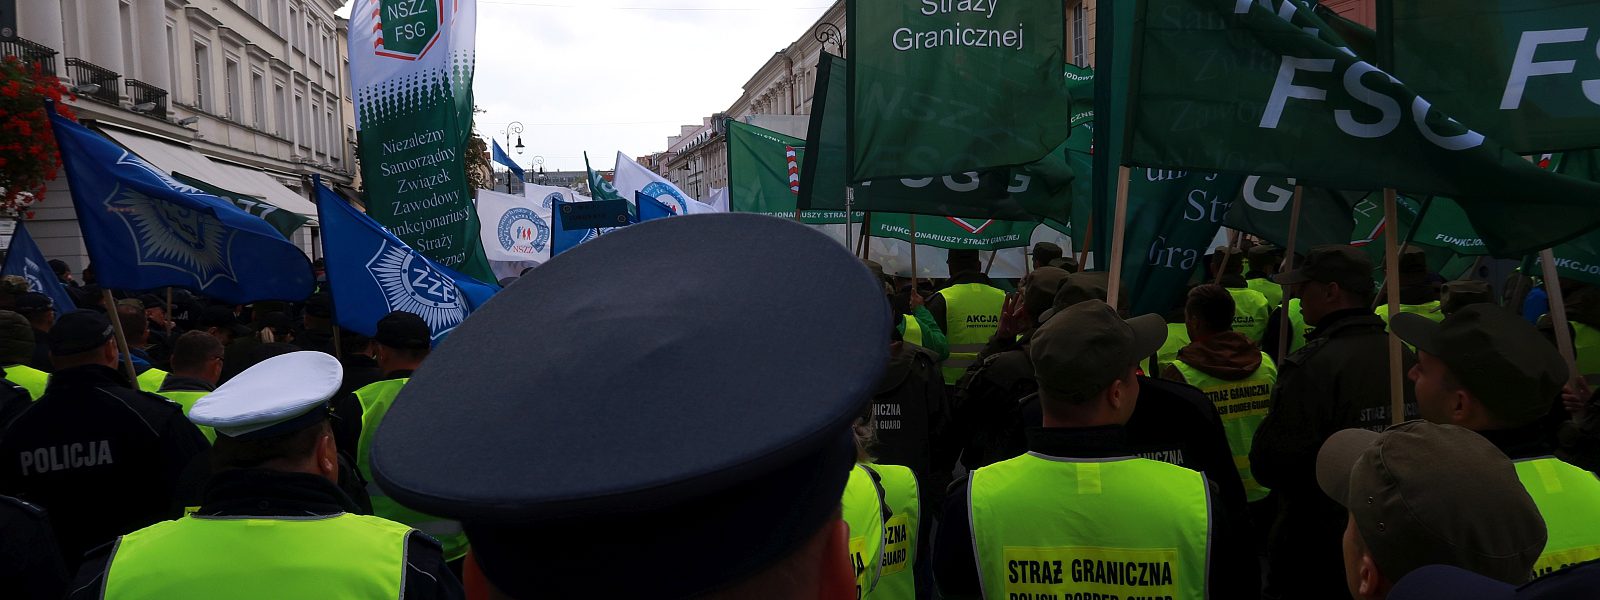 Manfestacja-Straz-Graniczna-Policja-Warszawa-2018- (258)